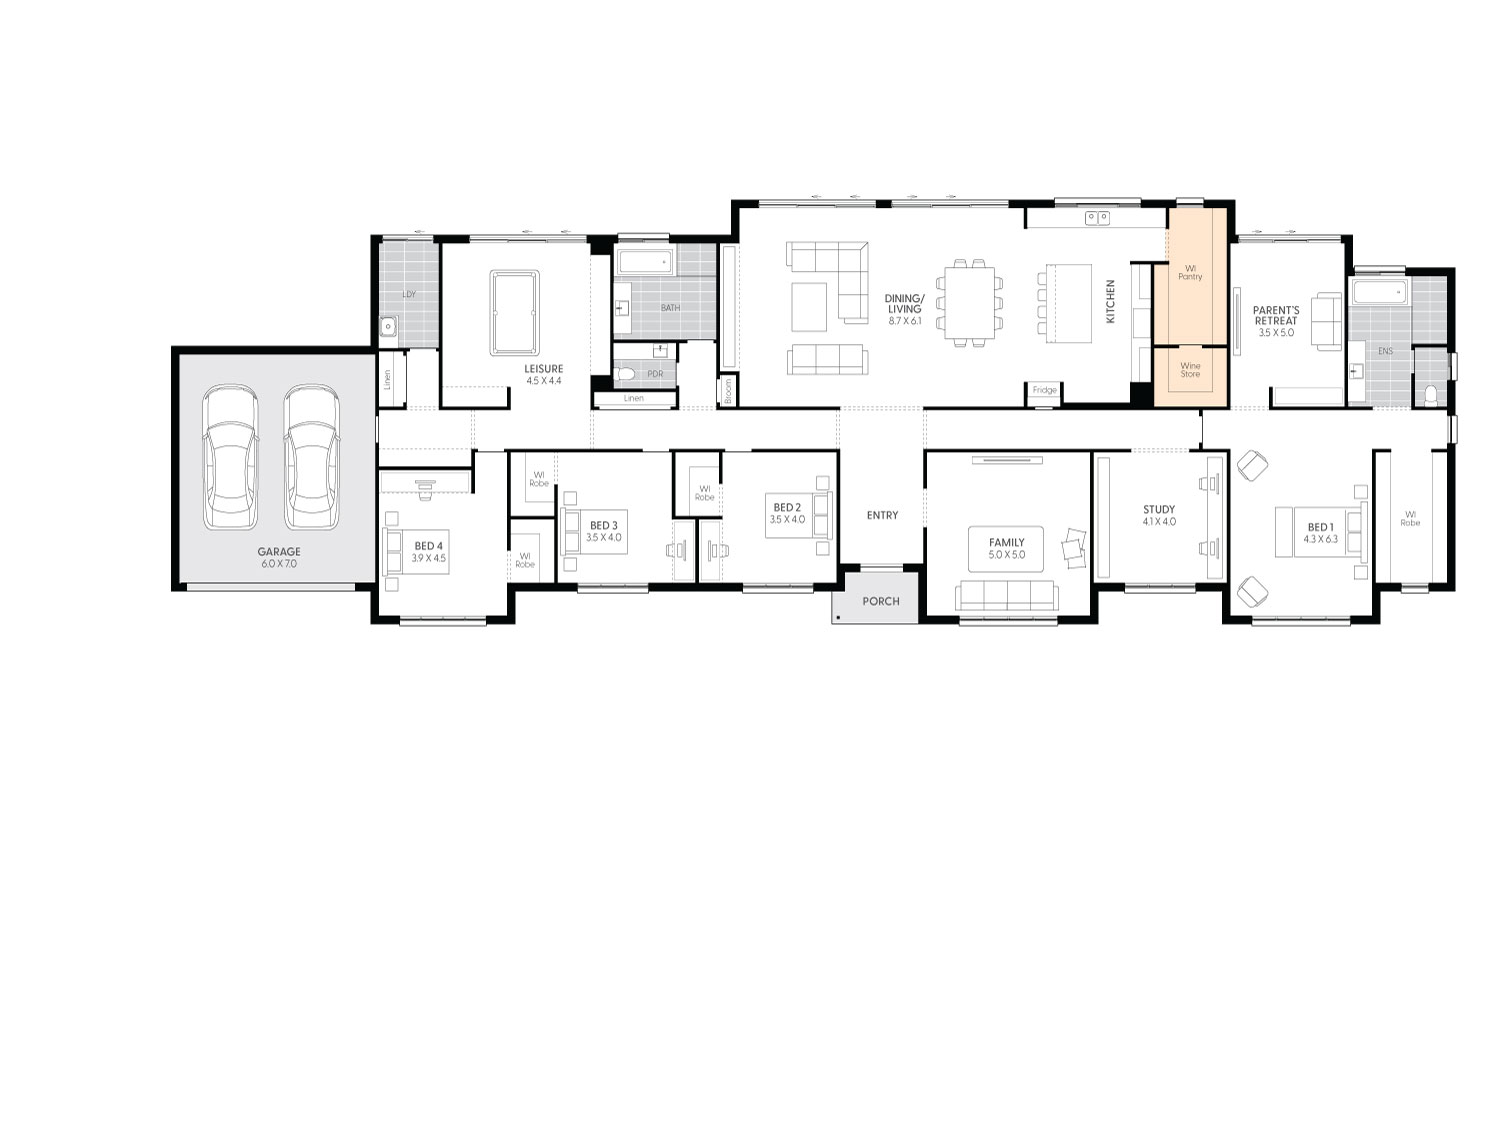 Sanford-47-floor-plan-WINE-ROOM-TO-KITCHEN-LHS_1.jpg 